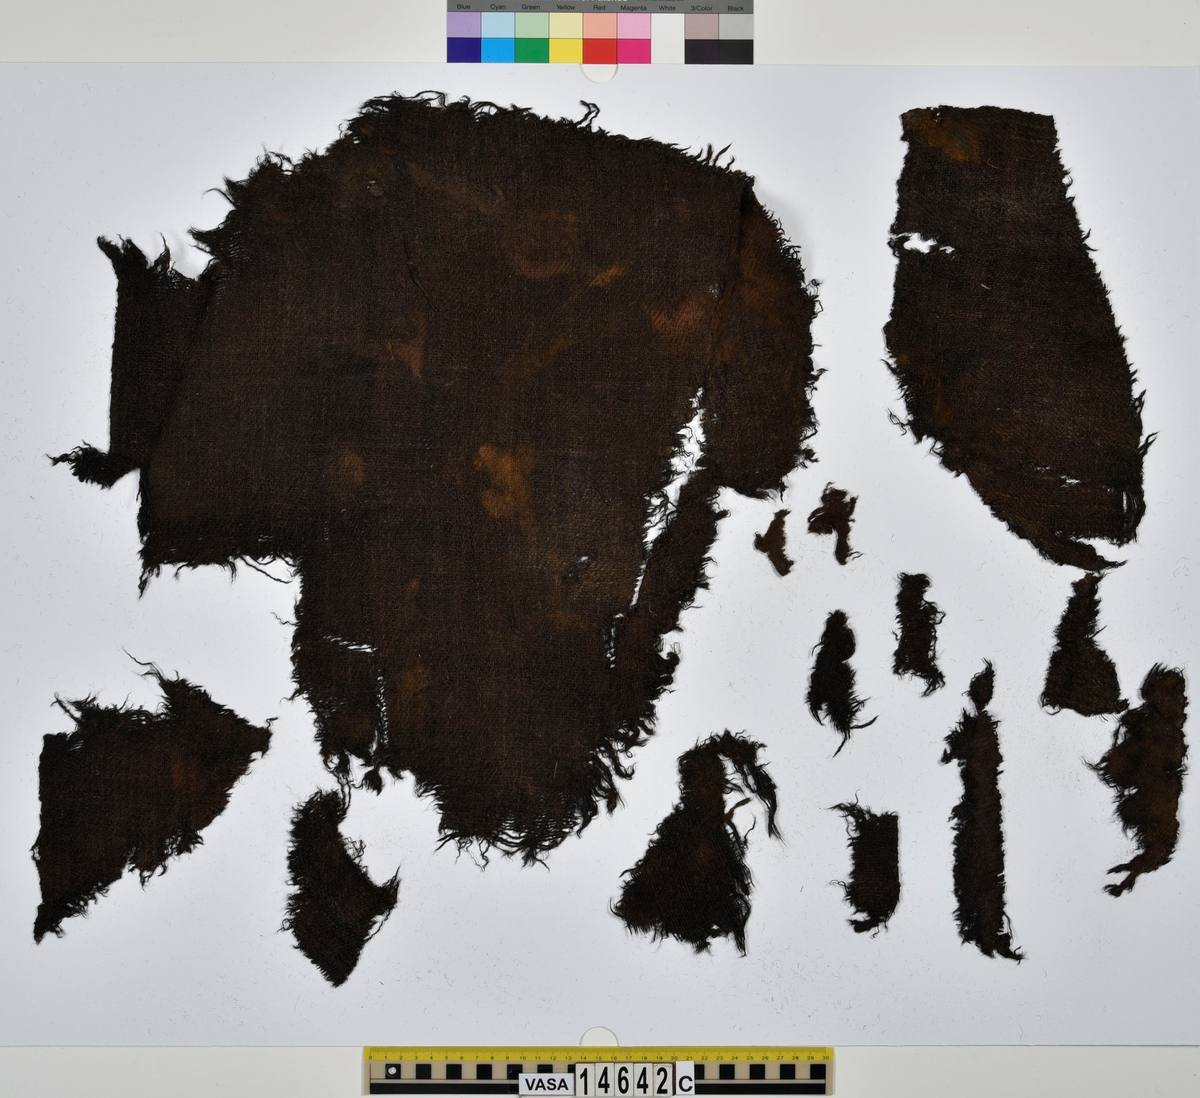 Textil.
132 fragment uppdelade på fyndnummer 14642a-f.
Fnr 14642a består av 42 fragment av ull vävda i tuskaft. Tyget har varit valkat på ena sidan. Många av fragmenten har bevarade originalkanter med sömmar och fållar.
Fnr 14642b består av 2 fragment av ull vävt i 2/1-kypert. Fragmentet har en bevarad originalkant.
Fnr 14642c består av 14 fragment av ull vävda i 2/2-kypert. Flera av fragmenten har en bevarad originalkant.
Fnr 14642d består av 28 fragment av ull vävda i 2/1-kypert. Fyra av fragmenten har en bevarad originalkant. Flera av fragmenten består bara av lösa trådar.
Fnr 14642e består av 9 fragment (4 större samt 5 mycket små) av ull vävda i tuskaft. Tyget har varit valkat på ena sidan. Fragmenten har bevarade originalkanter med spår av sömmar.
Fnr 14642f består av 37 fragment av ull vävda i tuskaft. Flera av fragmenten har bevarade originalkanter med fållar och spår av sömmar.